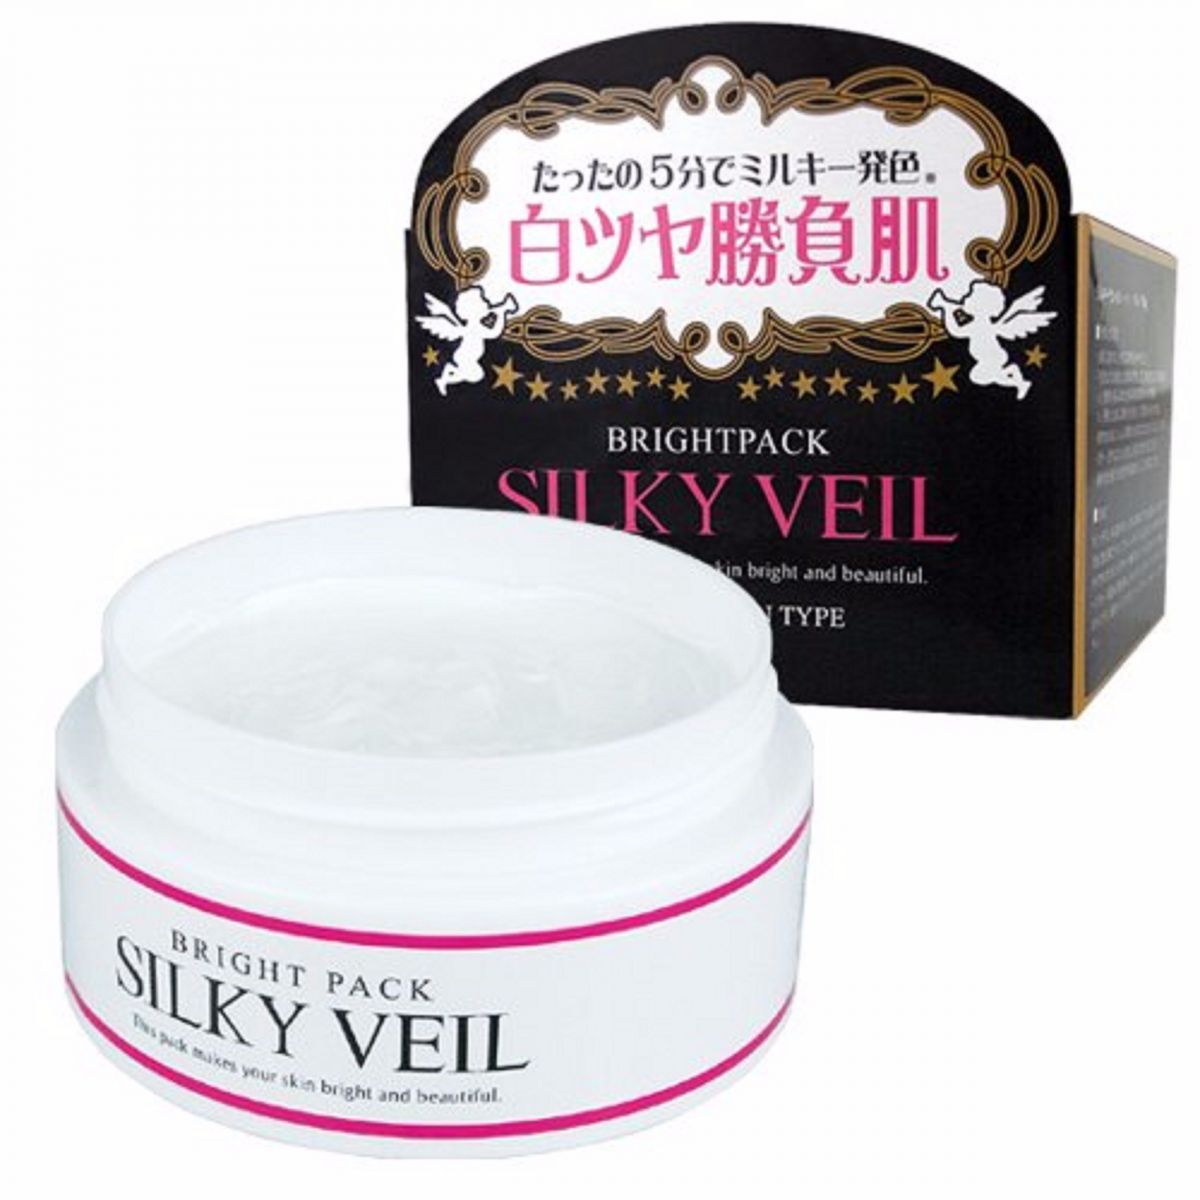 Kem dưỡng trắng da Nhật Bản Silky Veil không chất tạo màu